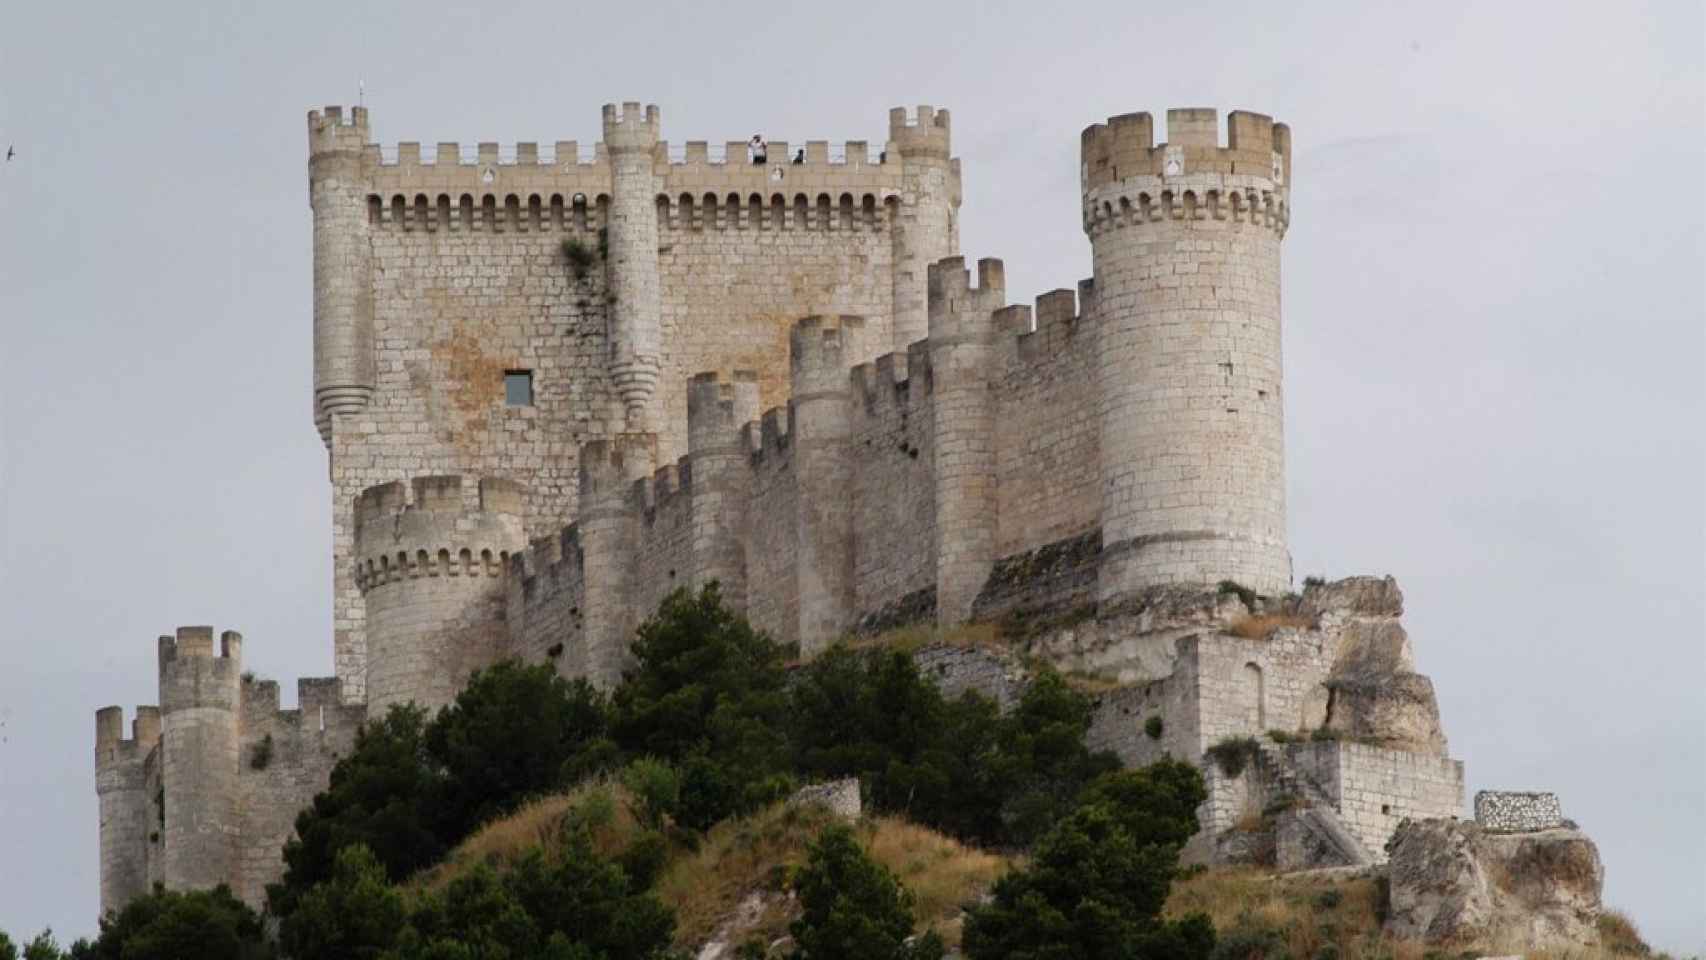 Imagen detalle del 'Buque de Castilla' fortaleza ubicada en el cerro de Peñafiel